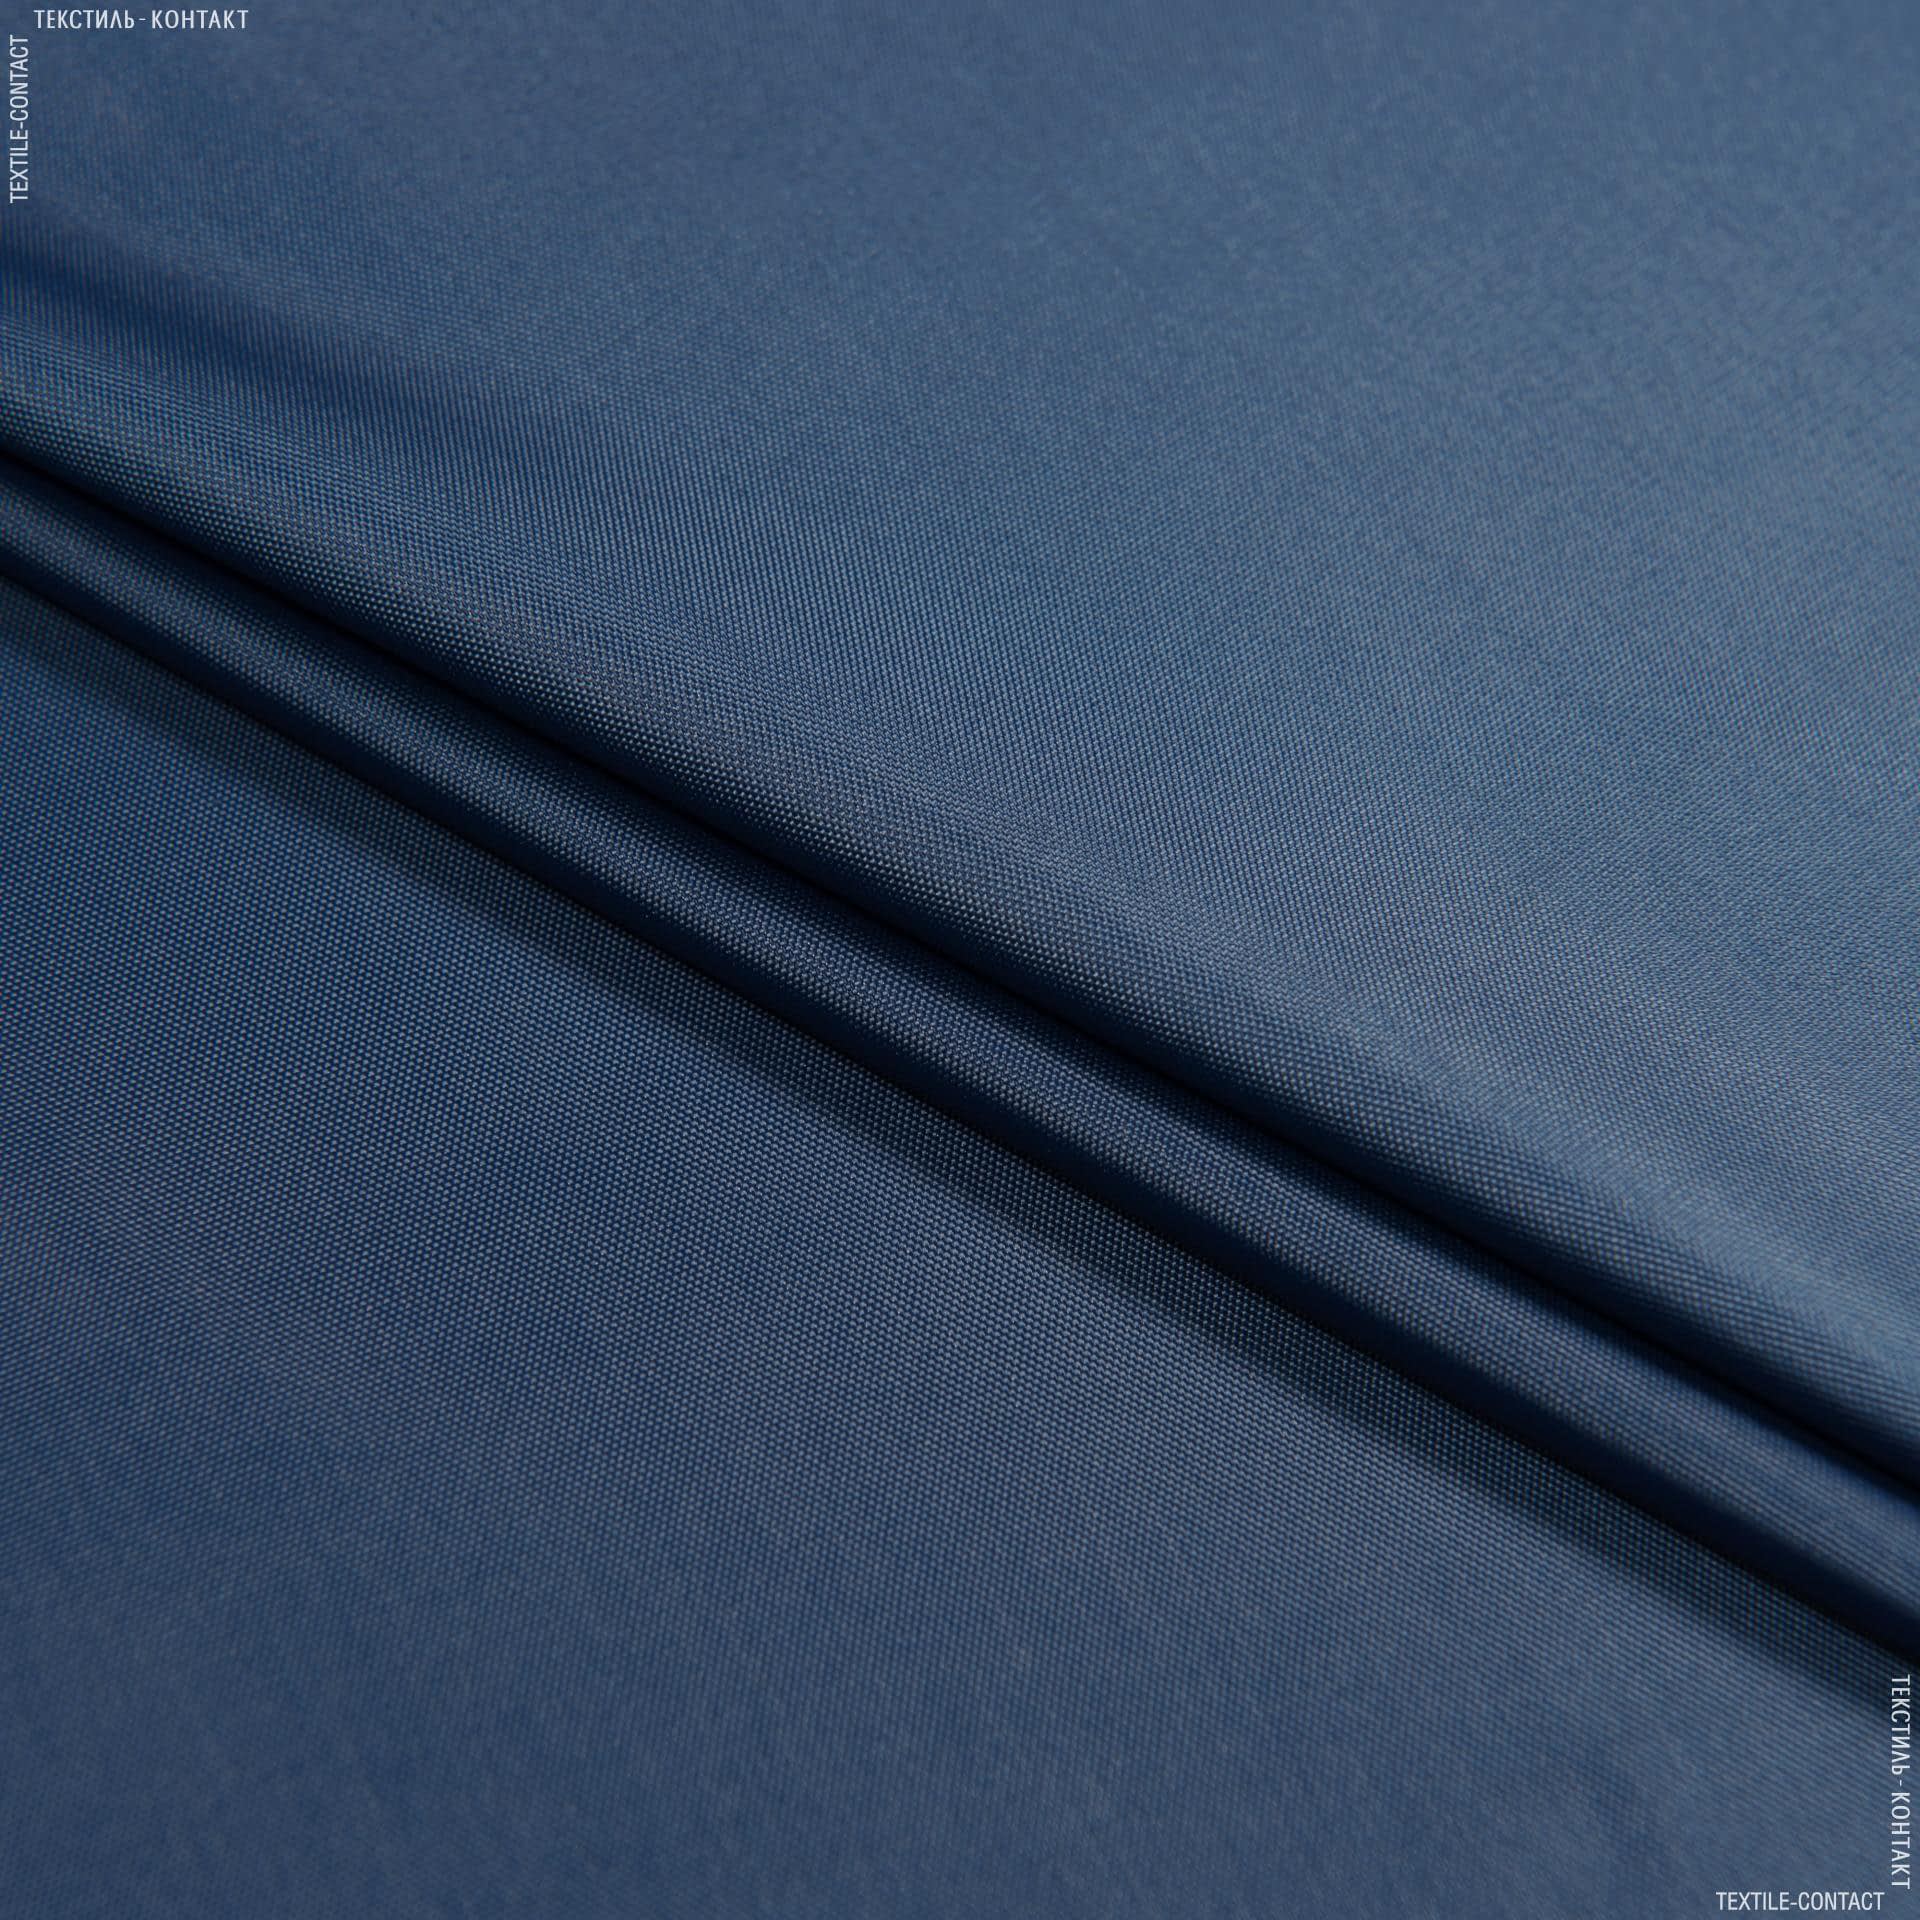 Ткани для верхней одежды - Болония сильвер темно-синий